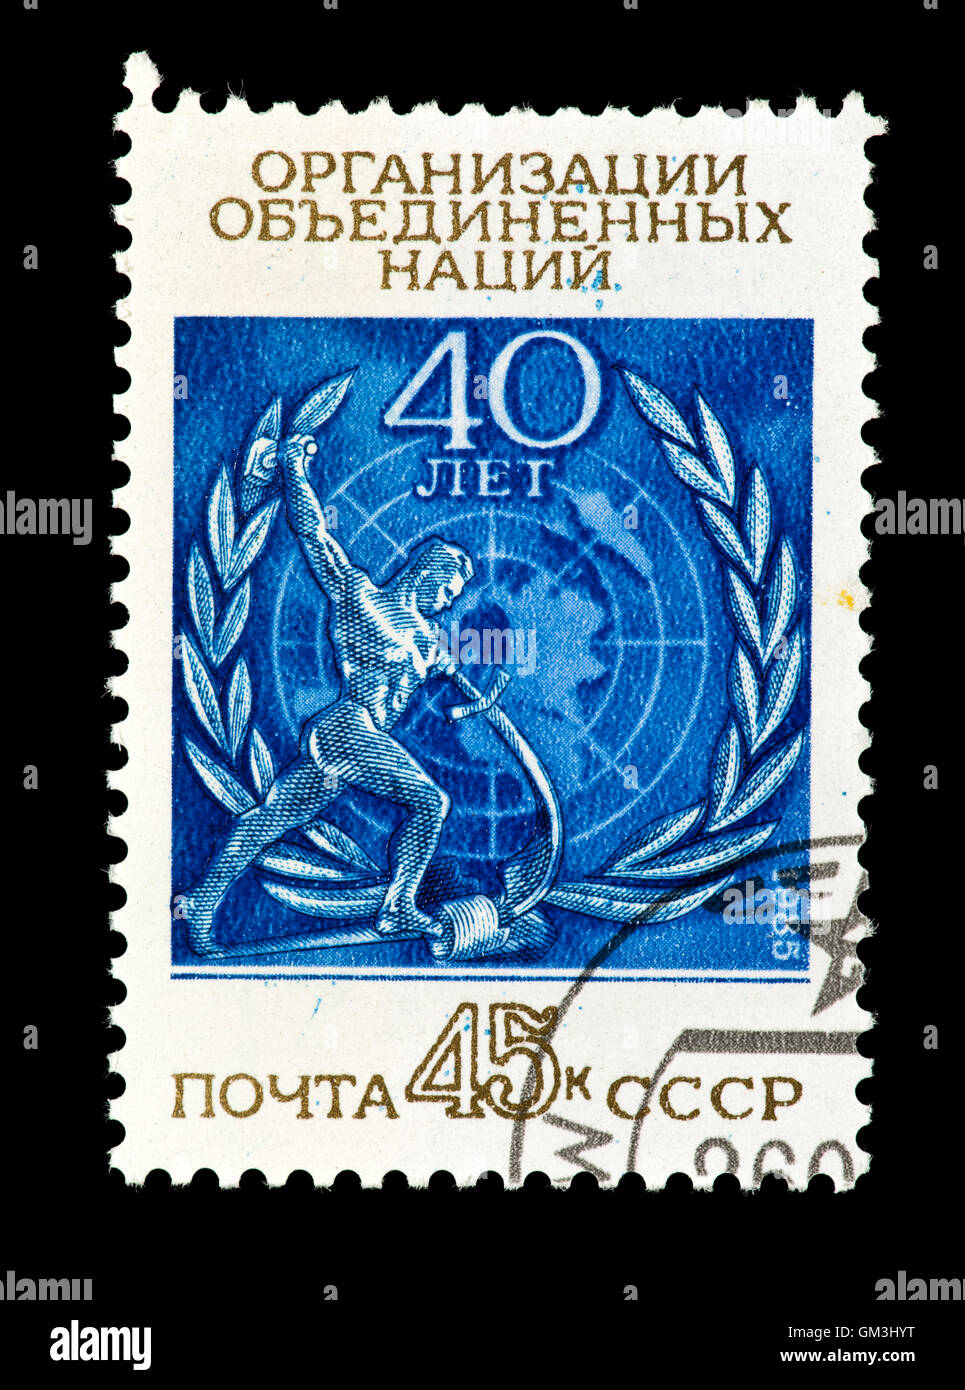 Timbre-poste de l'Union soviétique a publié pour le 40e anniversaire de l'Organisation des Nations Unies. Banque D'Images